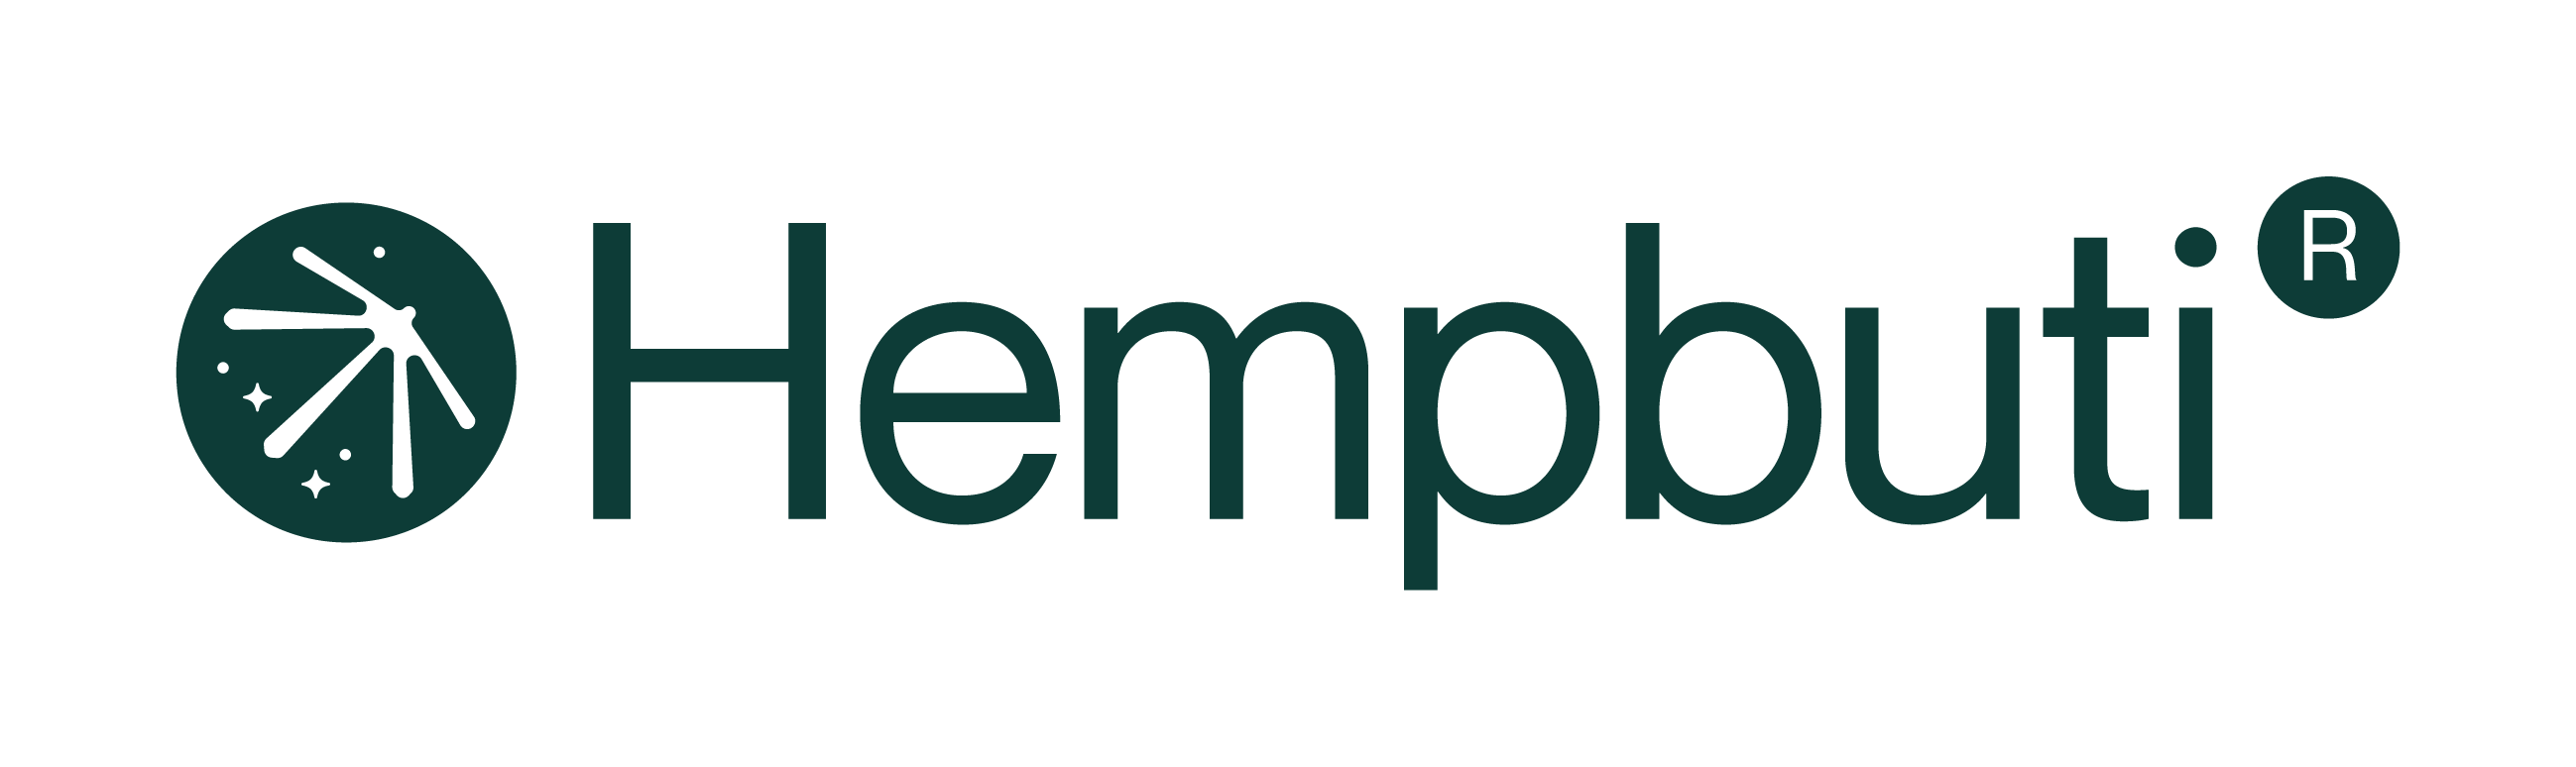 Hempbuti Logo